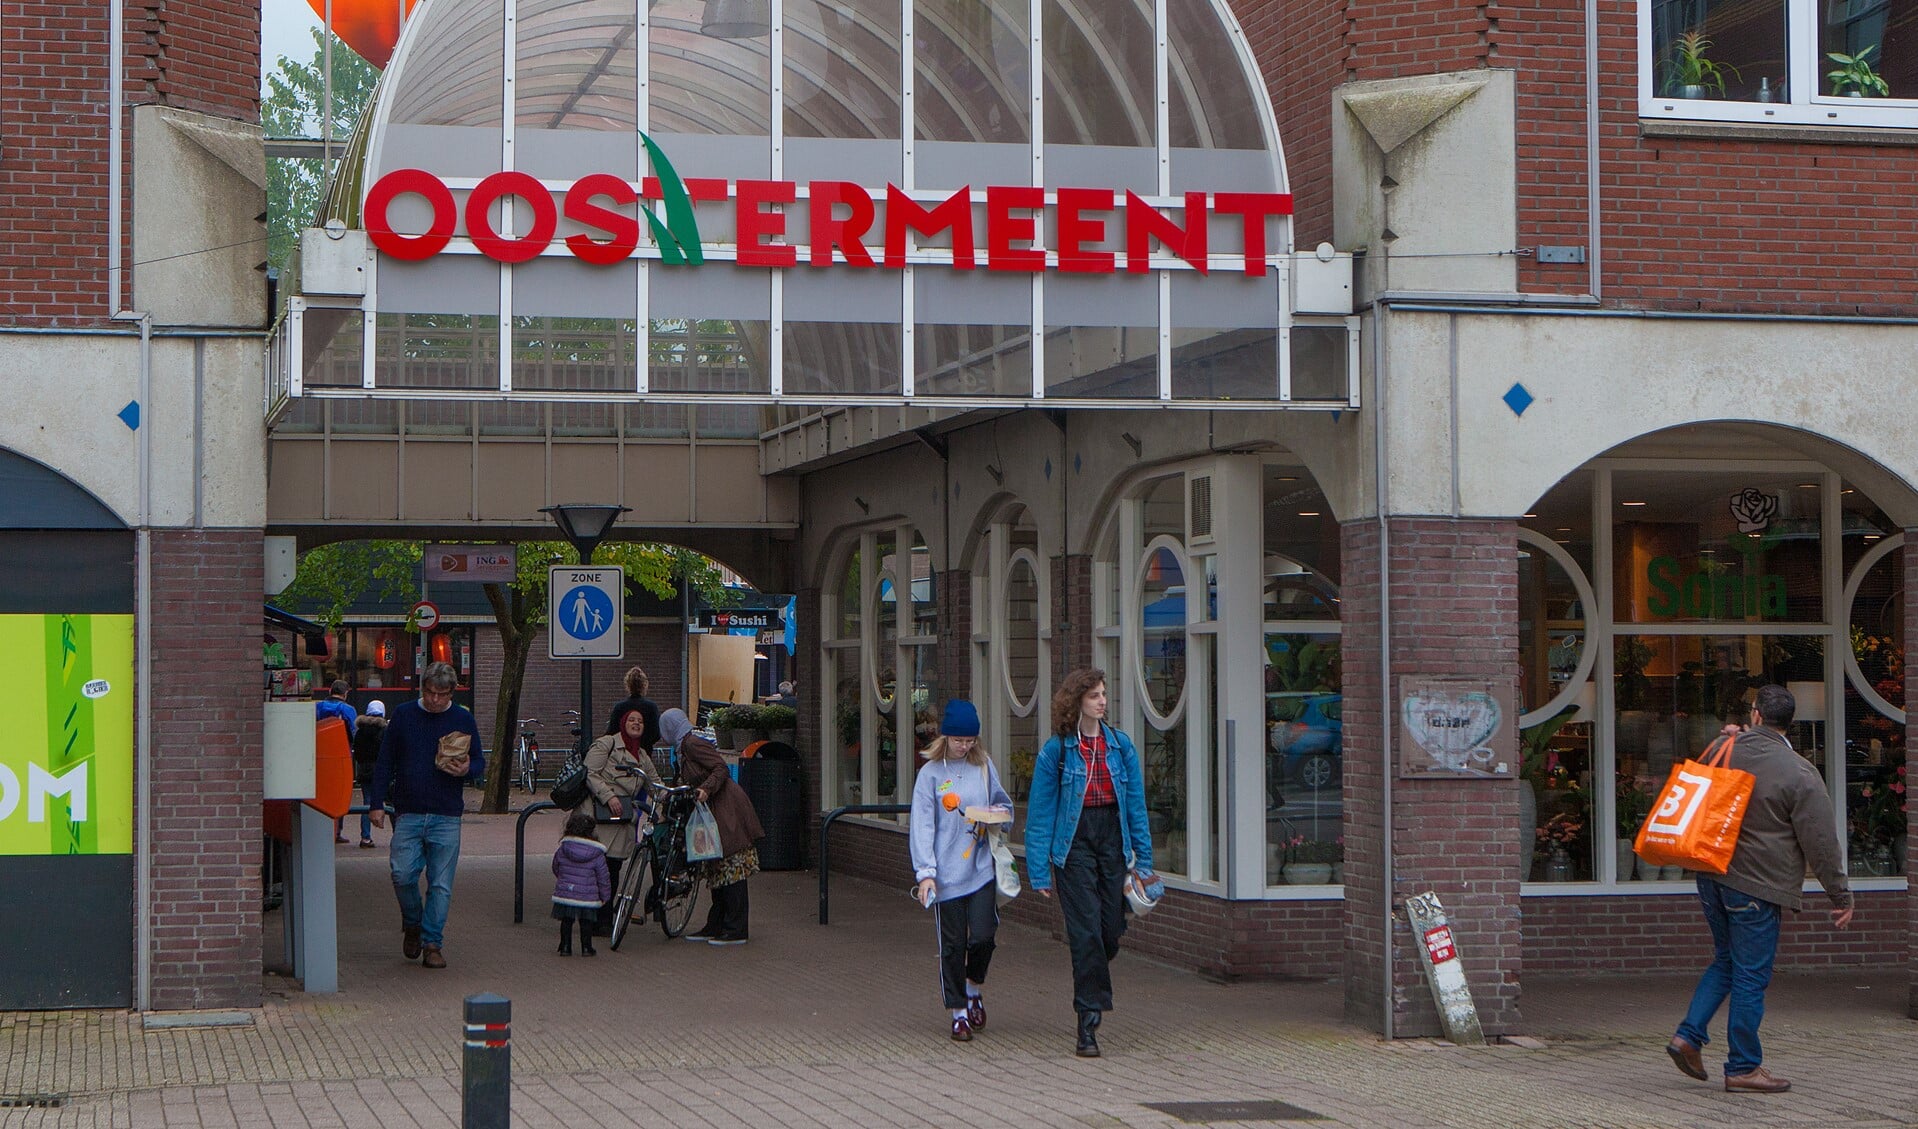 Winkelcentrum Oostermeent. 